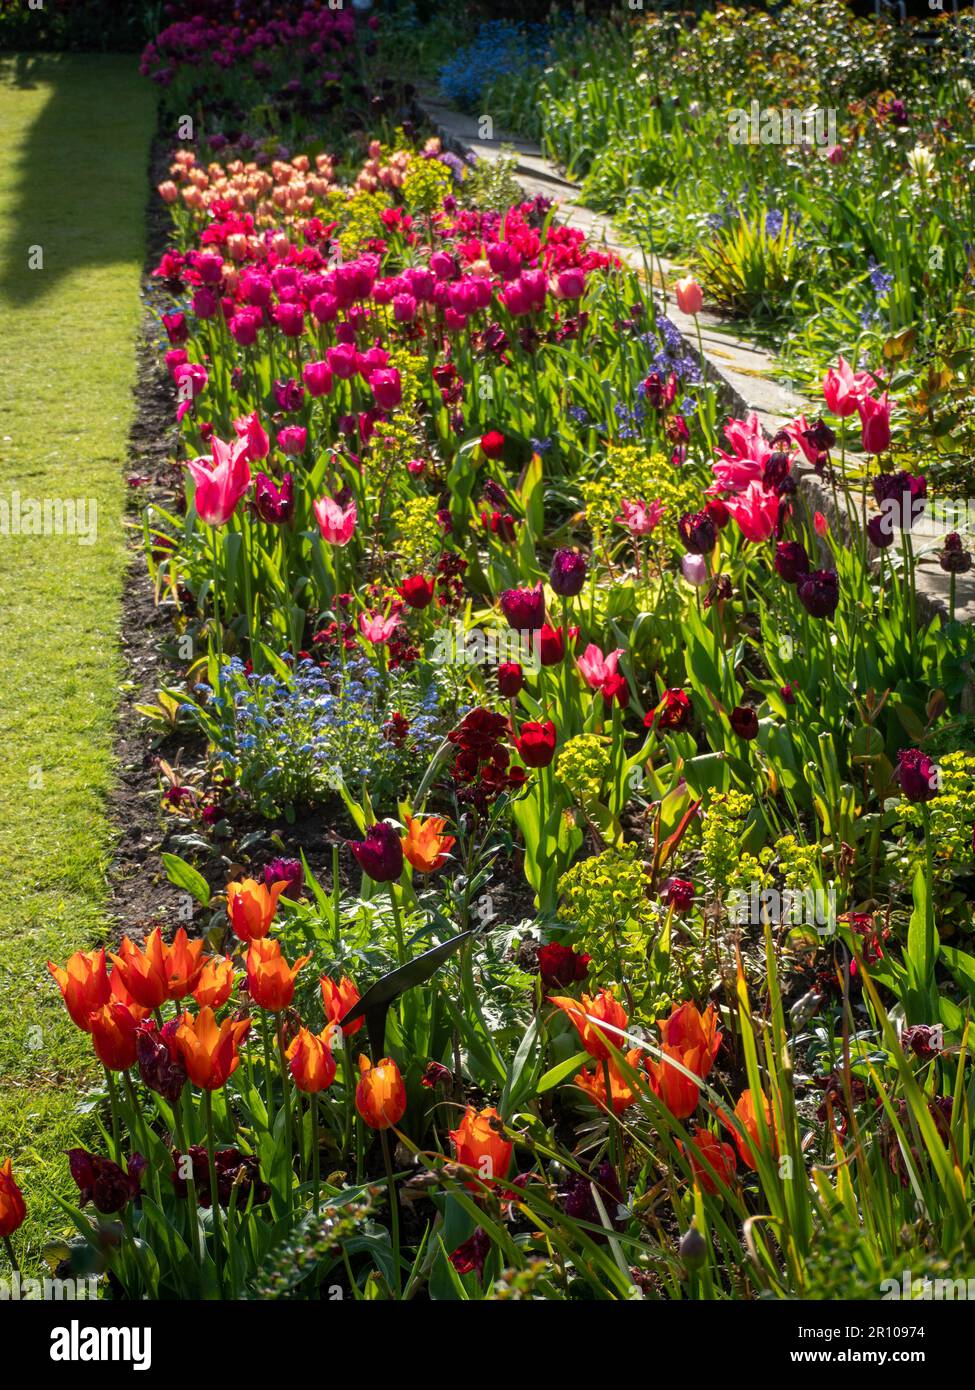 Chenies Manor Garden Tulps im Mai. Leuchtend rote, orangefarbene und rosafarbene Tulpen, die an einem schönen Nachmittag in Schichten in dem terrassenförmig versenkten Garten gepflanzt sind. Stockfoto